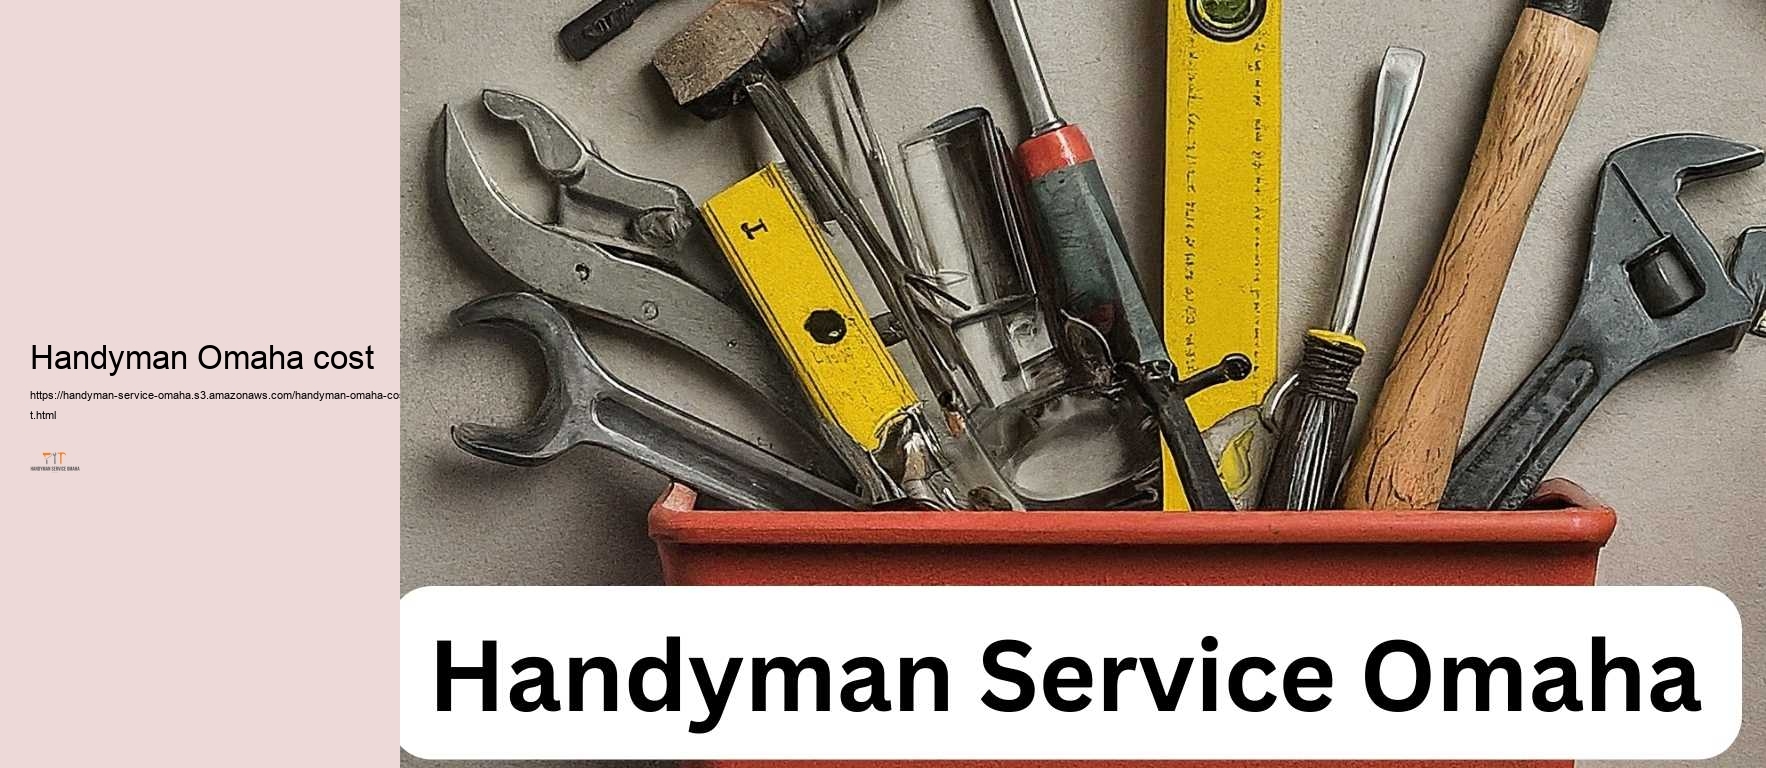 Handyman Omaha cost